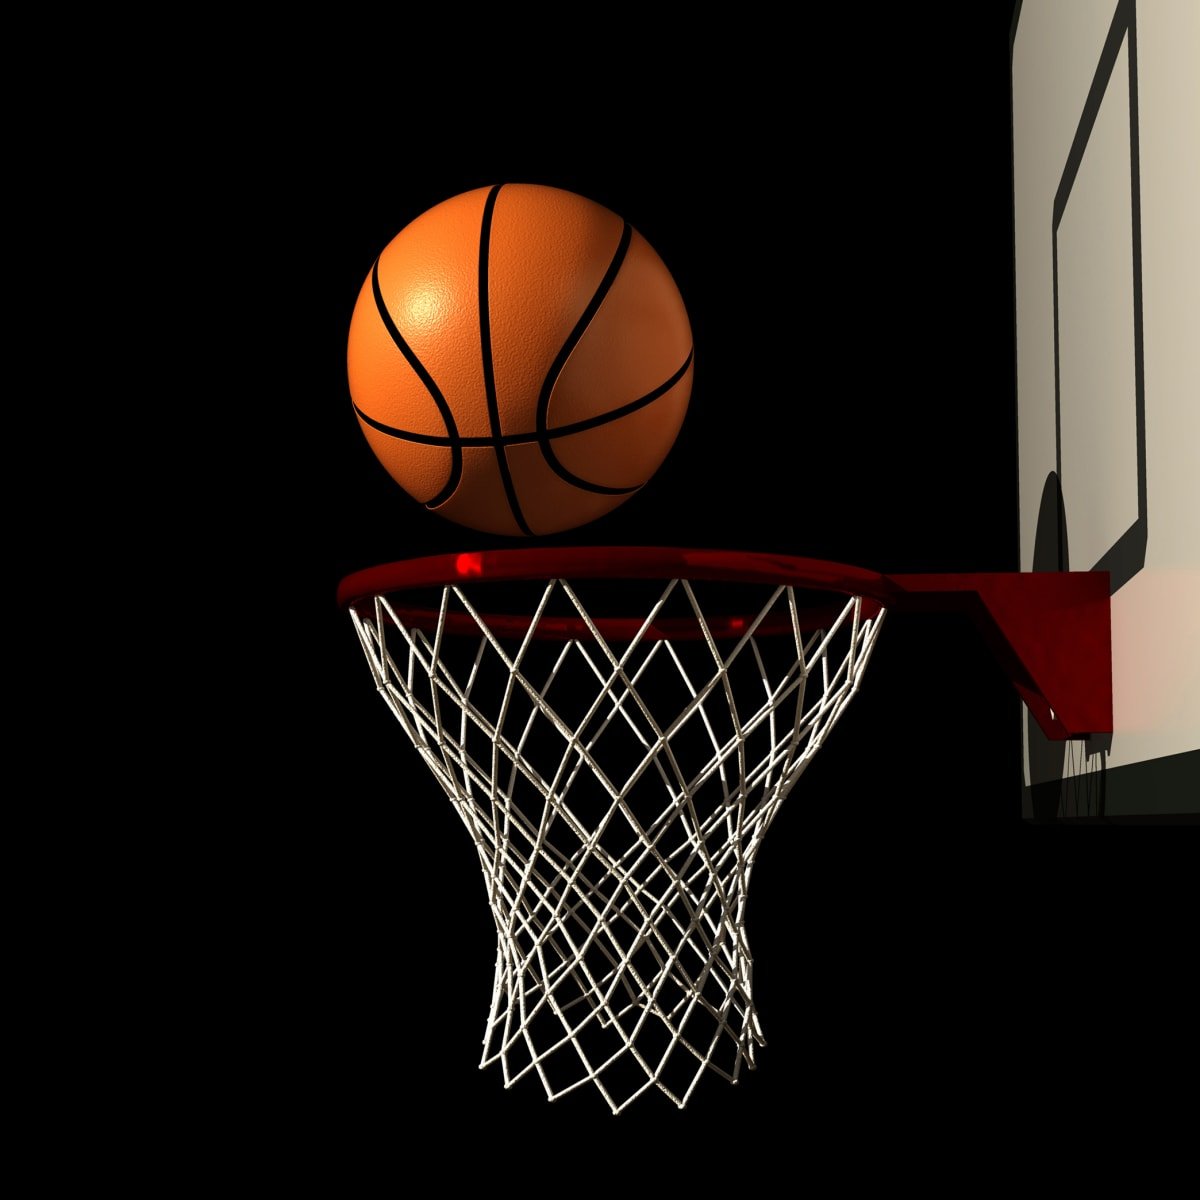 Баскетбольный мяч залетает в кольцо